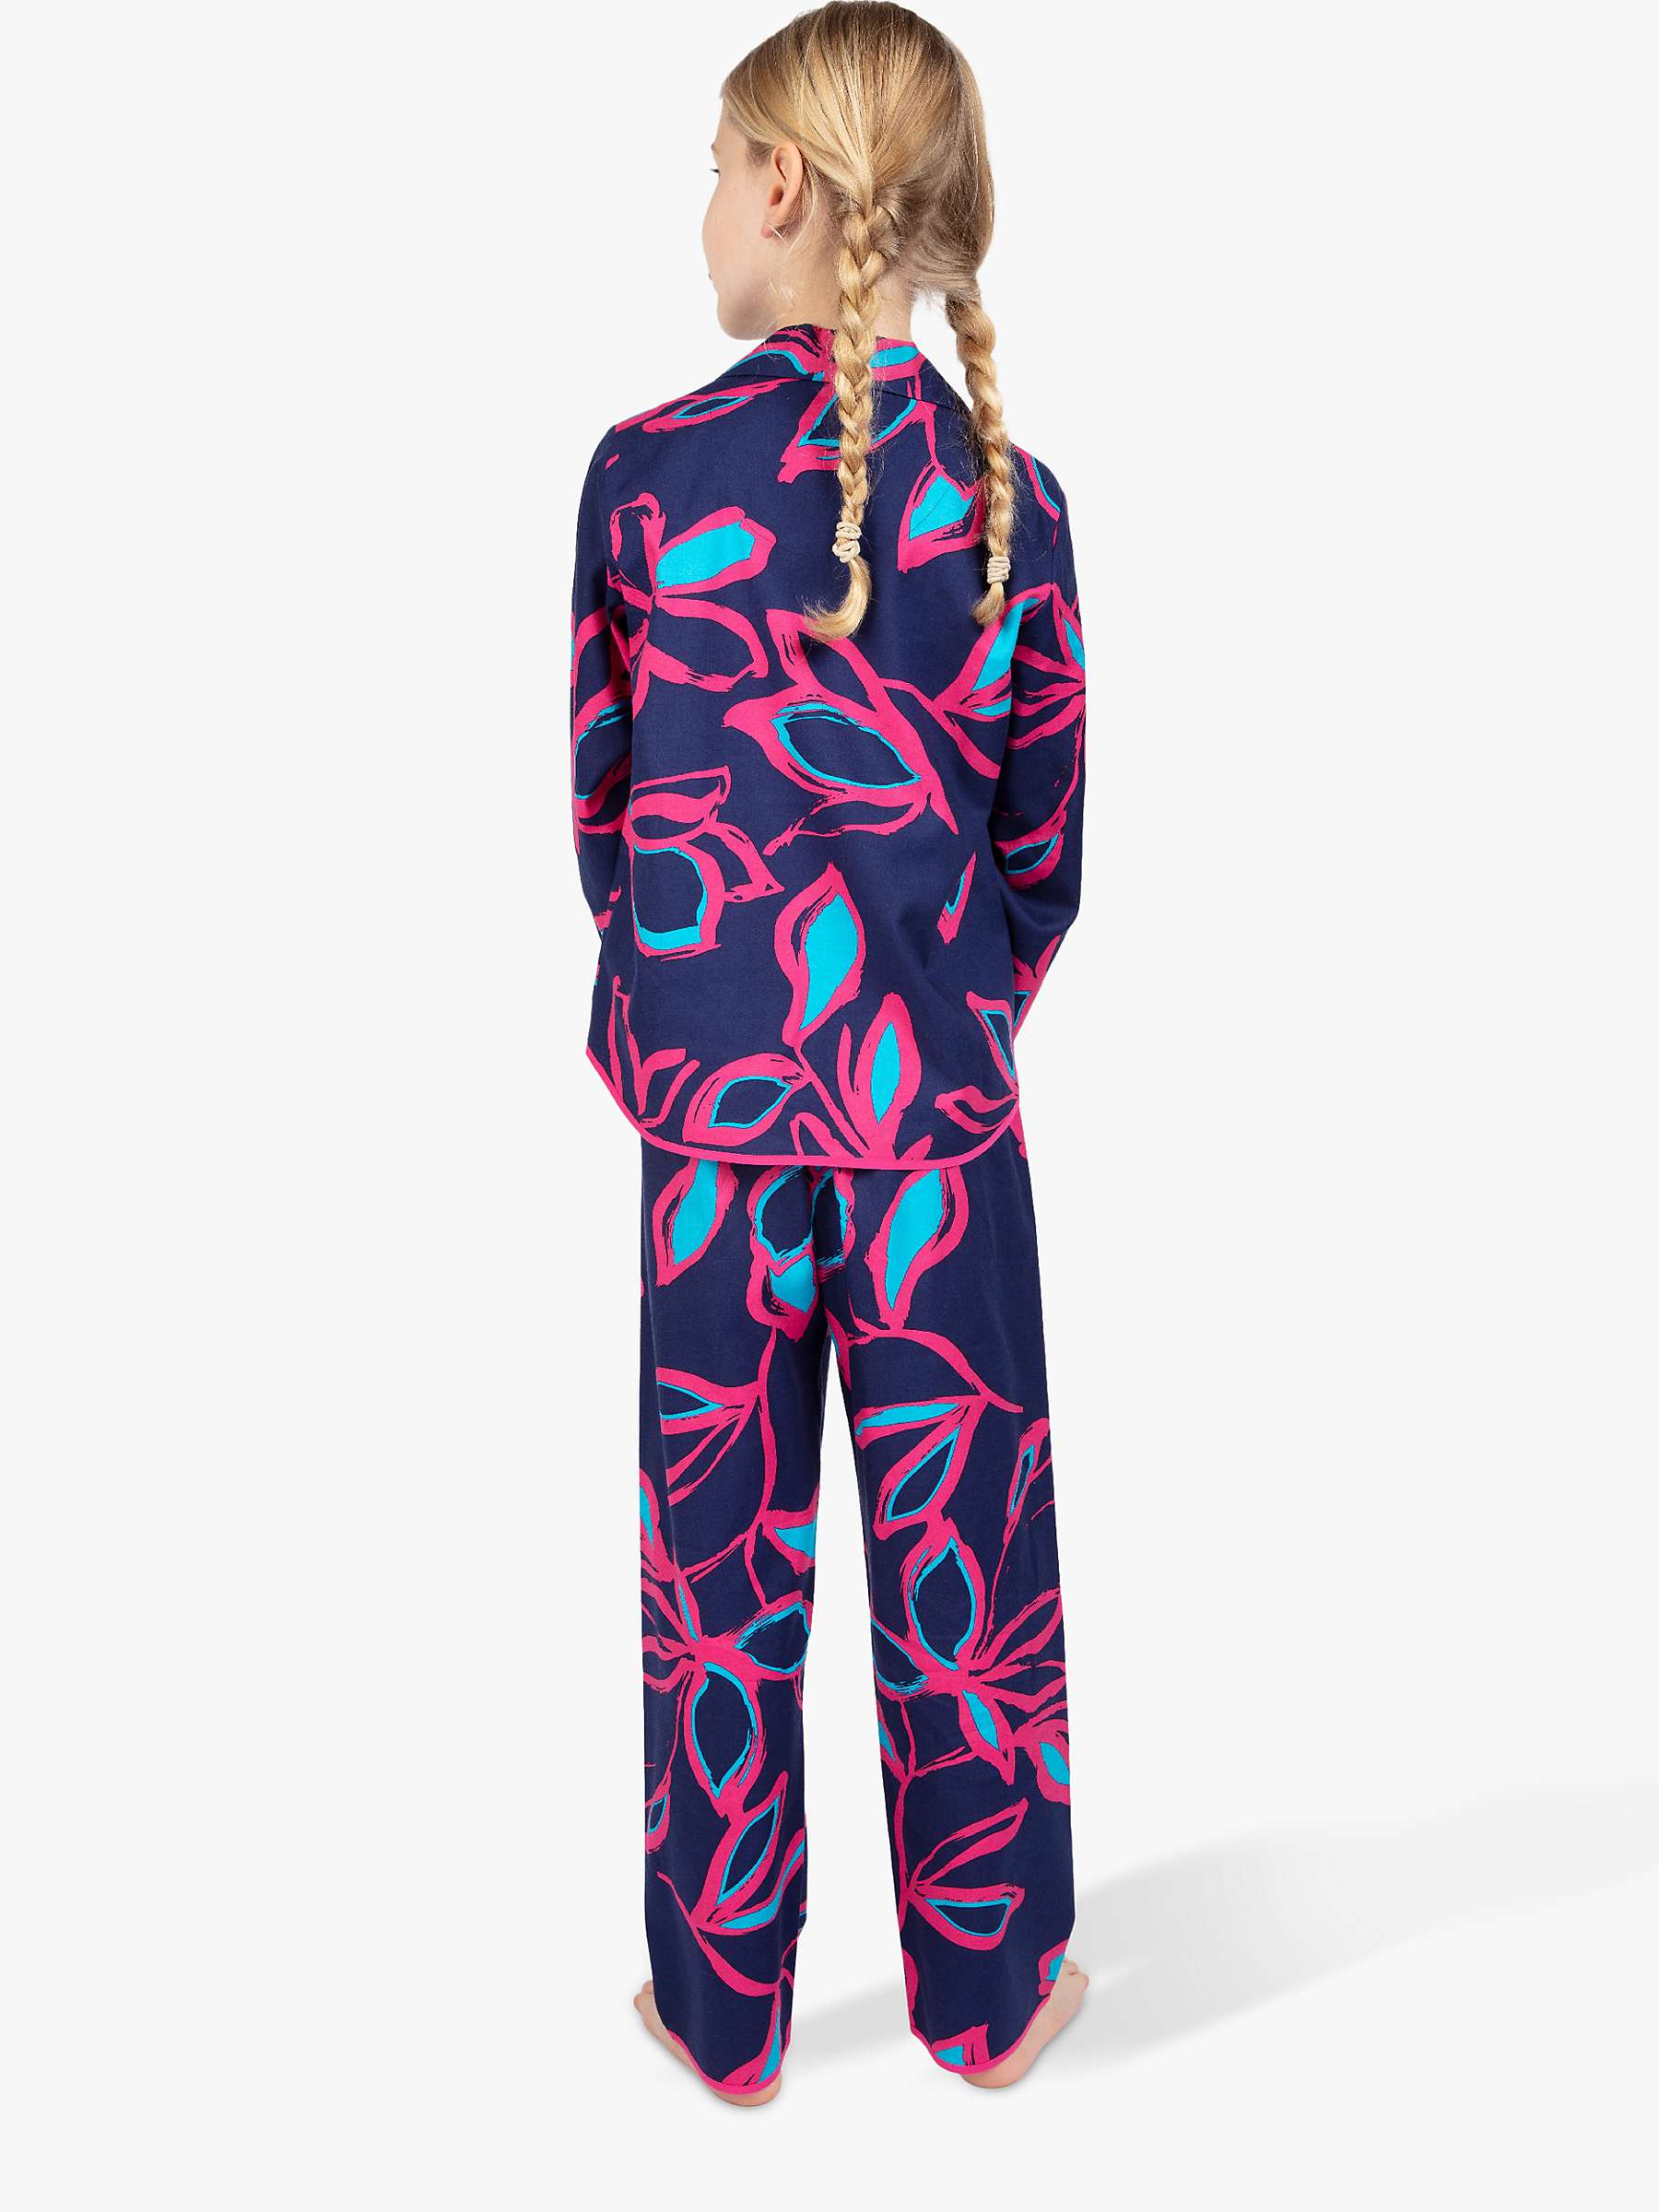 Buy Cyberjammies Kids' Charlotte Floral Print Pyjama Set, Navy/Pink Online at johnlewis.com